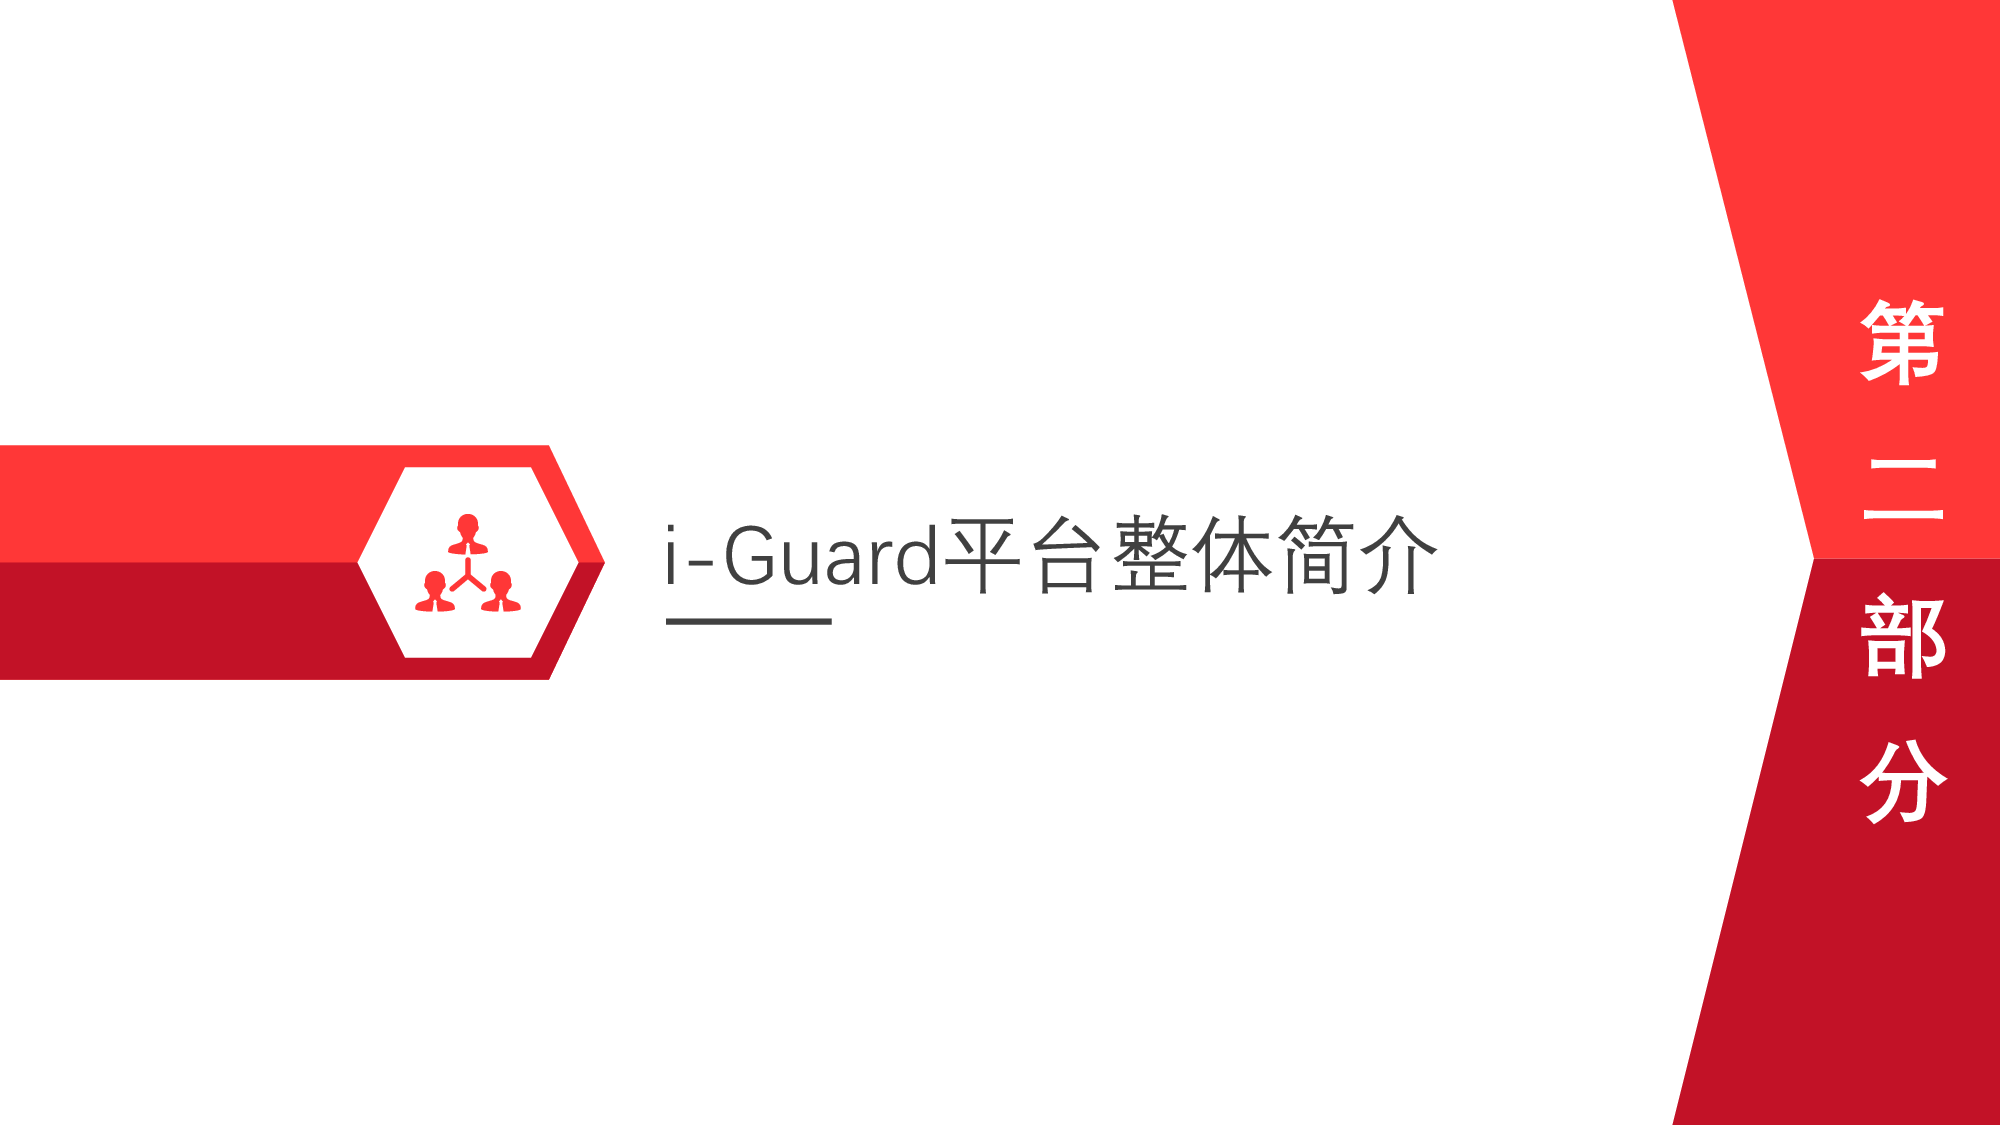 盈商云服智慧物业管控系统i-Guard V4.1图片